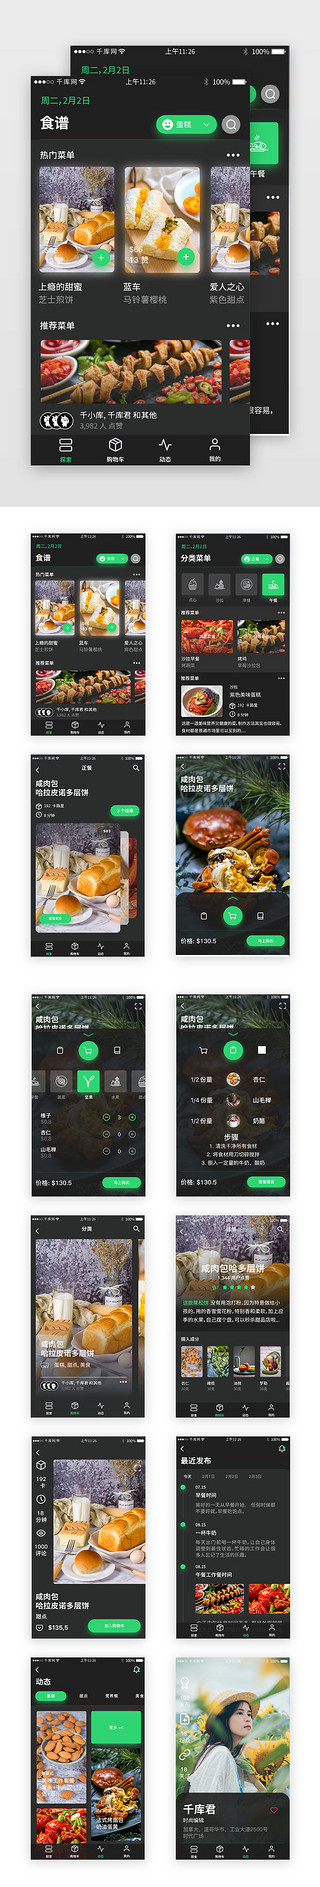 高铁ppt模板UI设计素材_深色高端美食类app套图